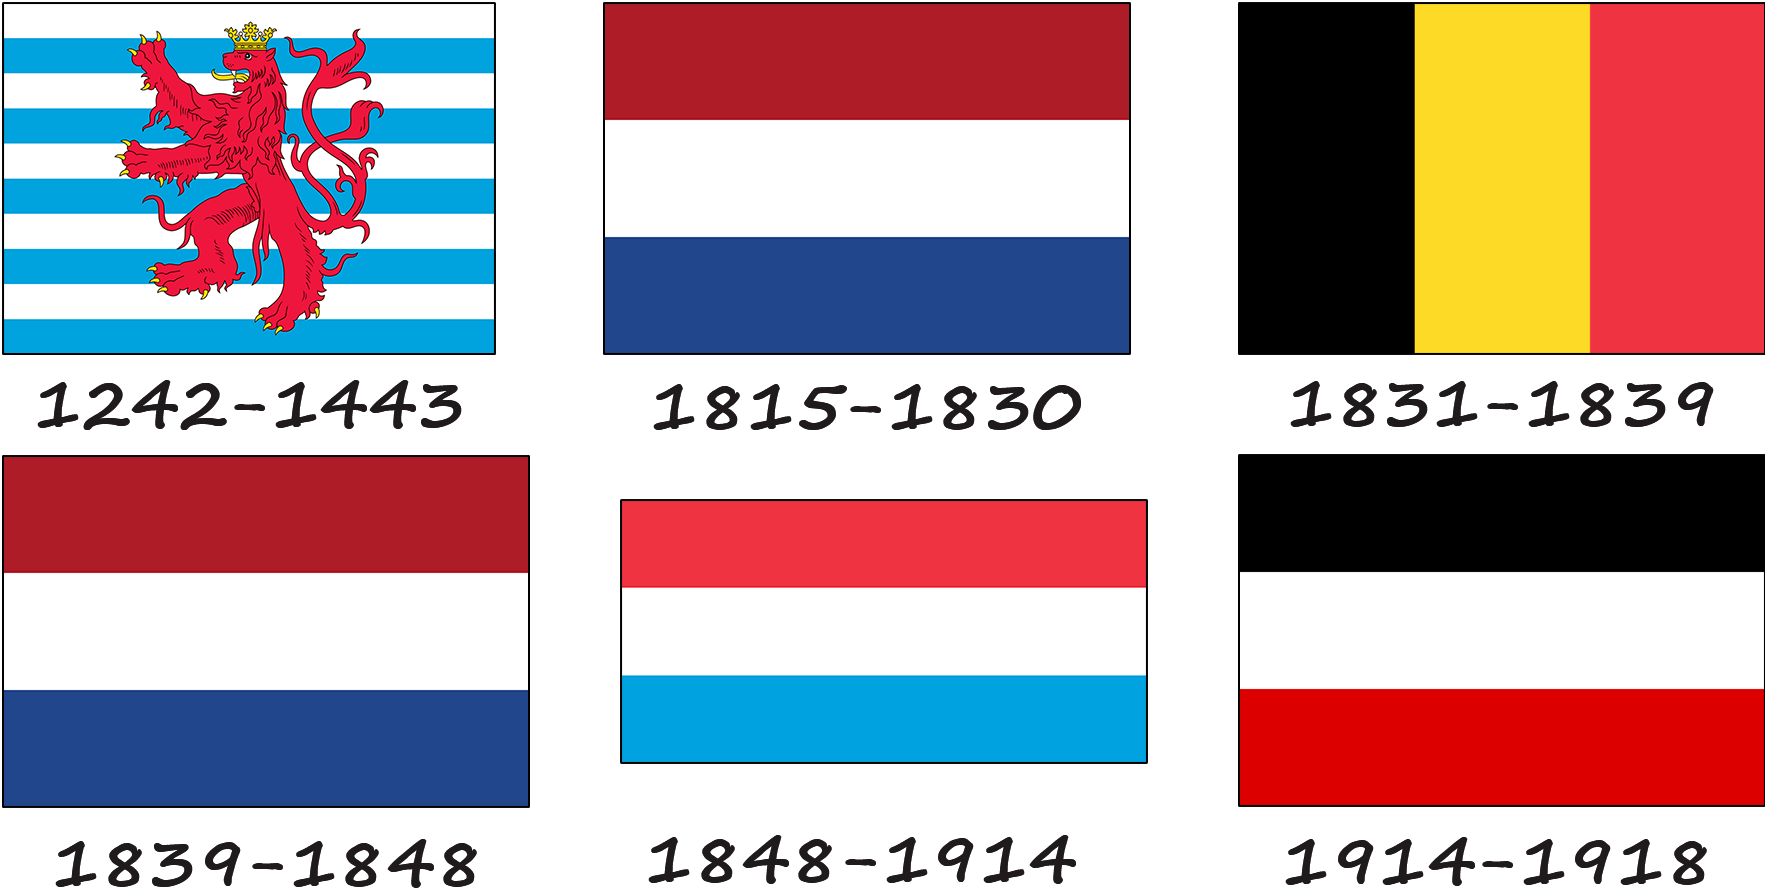 Histoire du drapeau luxembourgeois